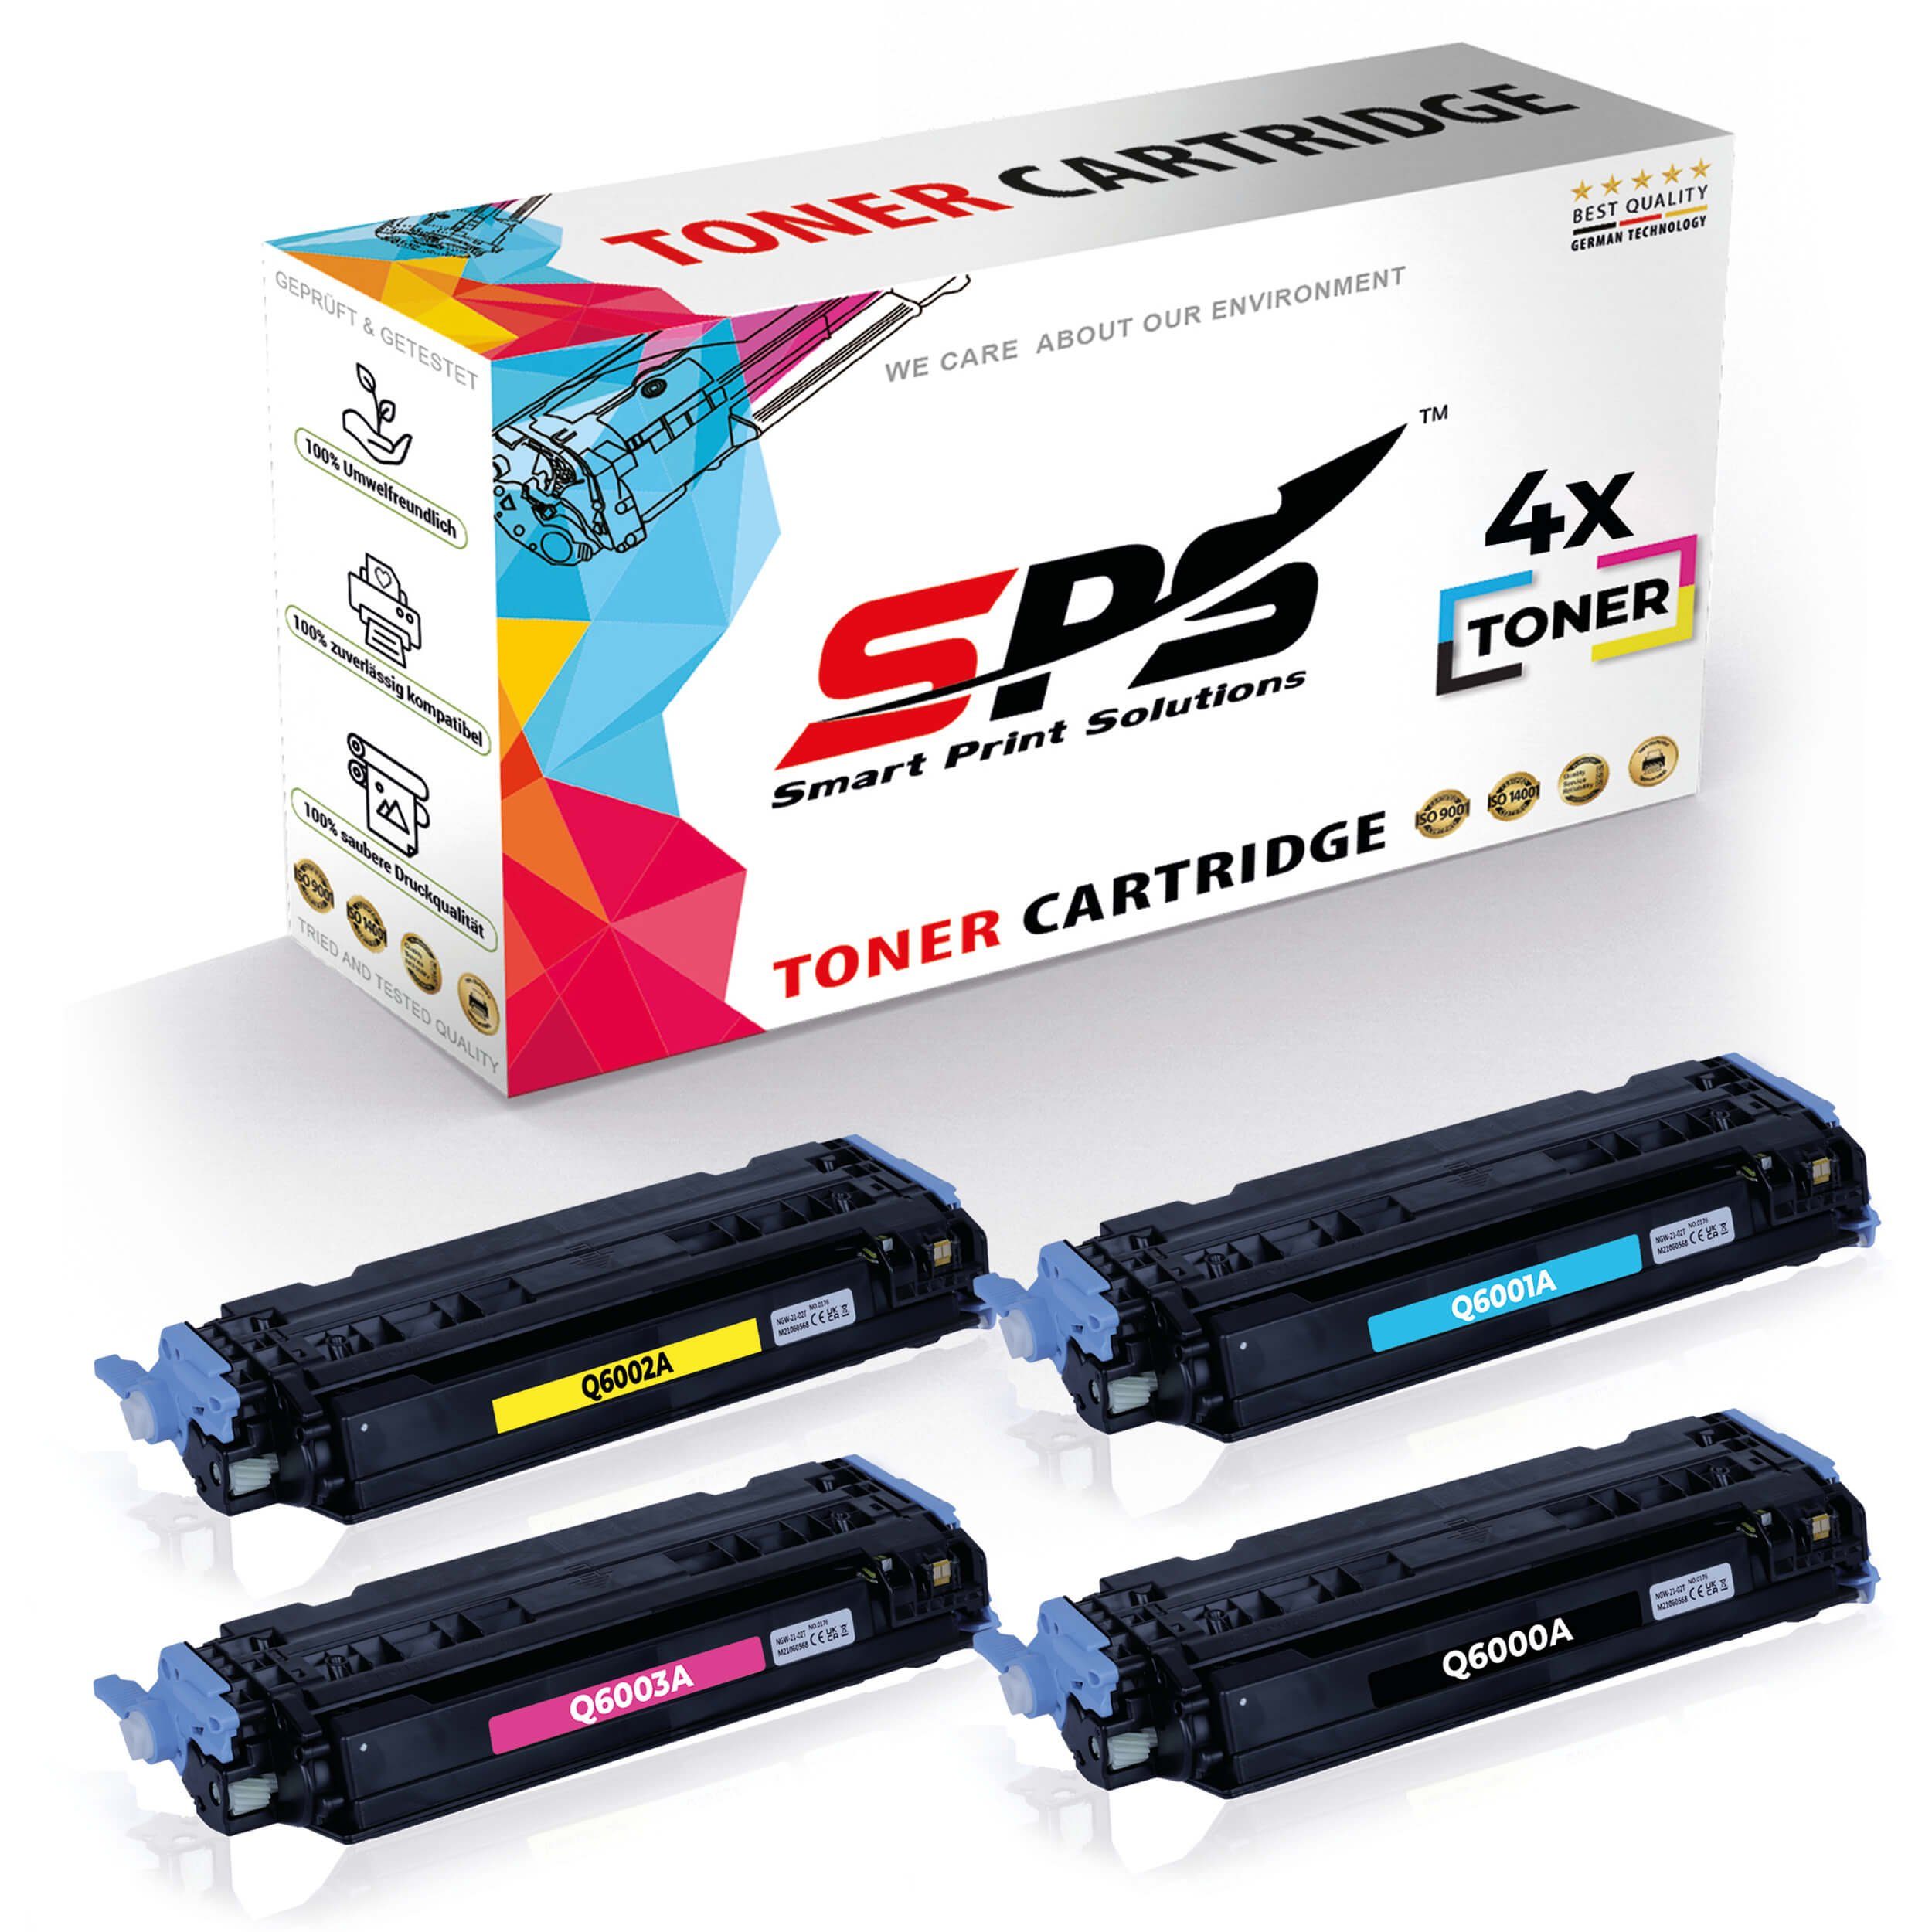 SPS Tonerkartusche 4x Multipack Set Kompatibel für HP Color Laserjet, (4er Pack, 4x Toner)